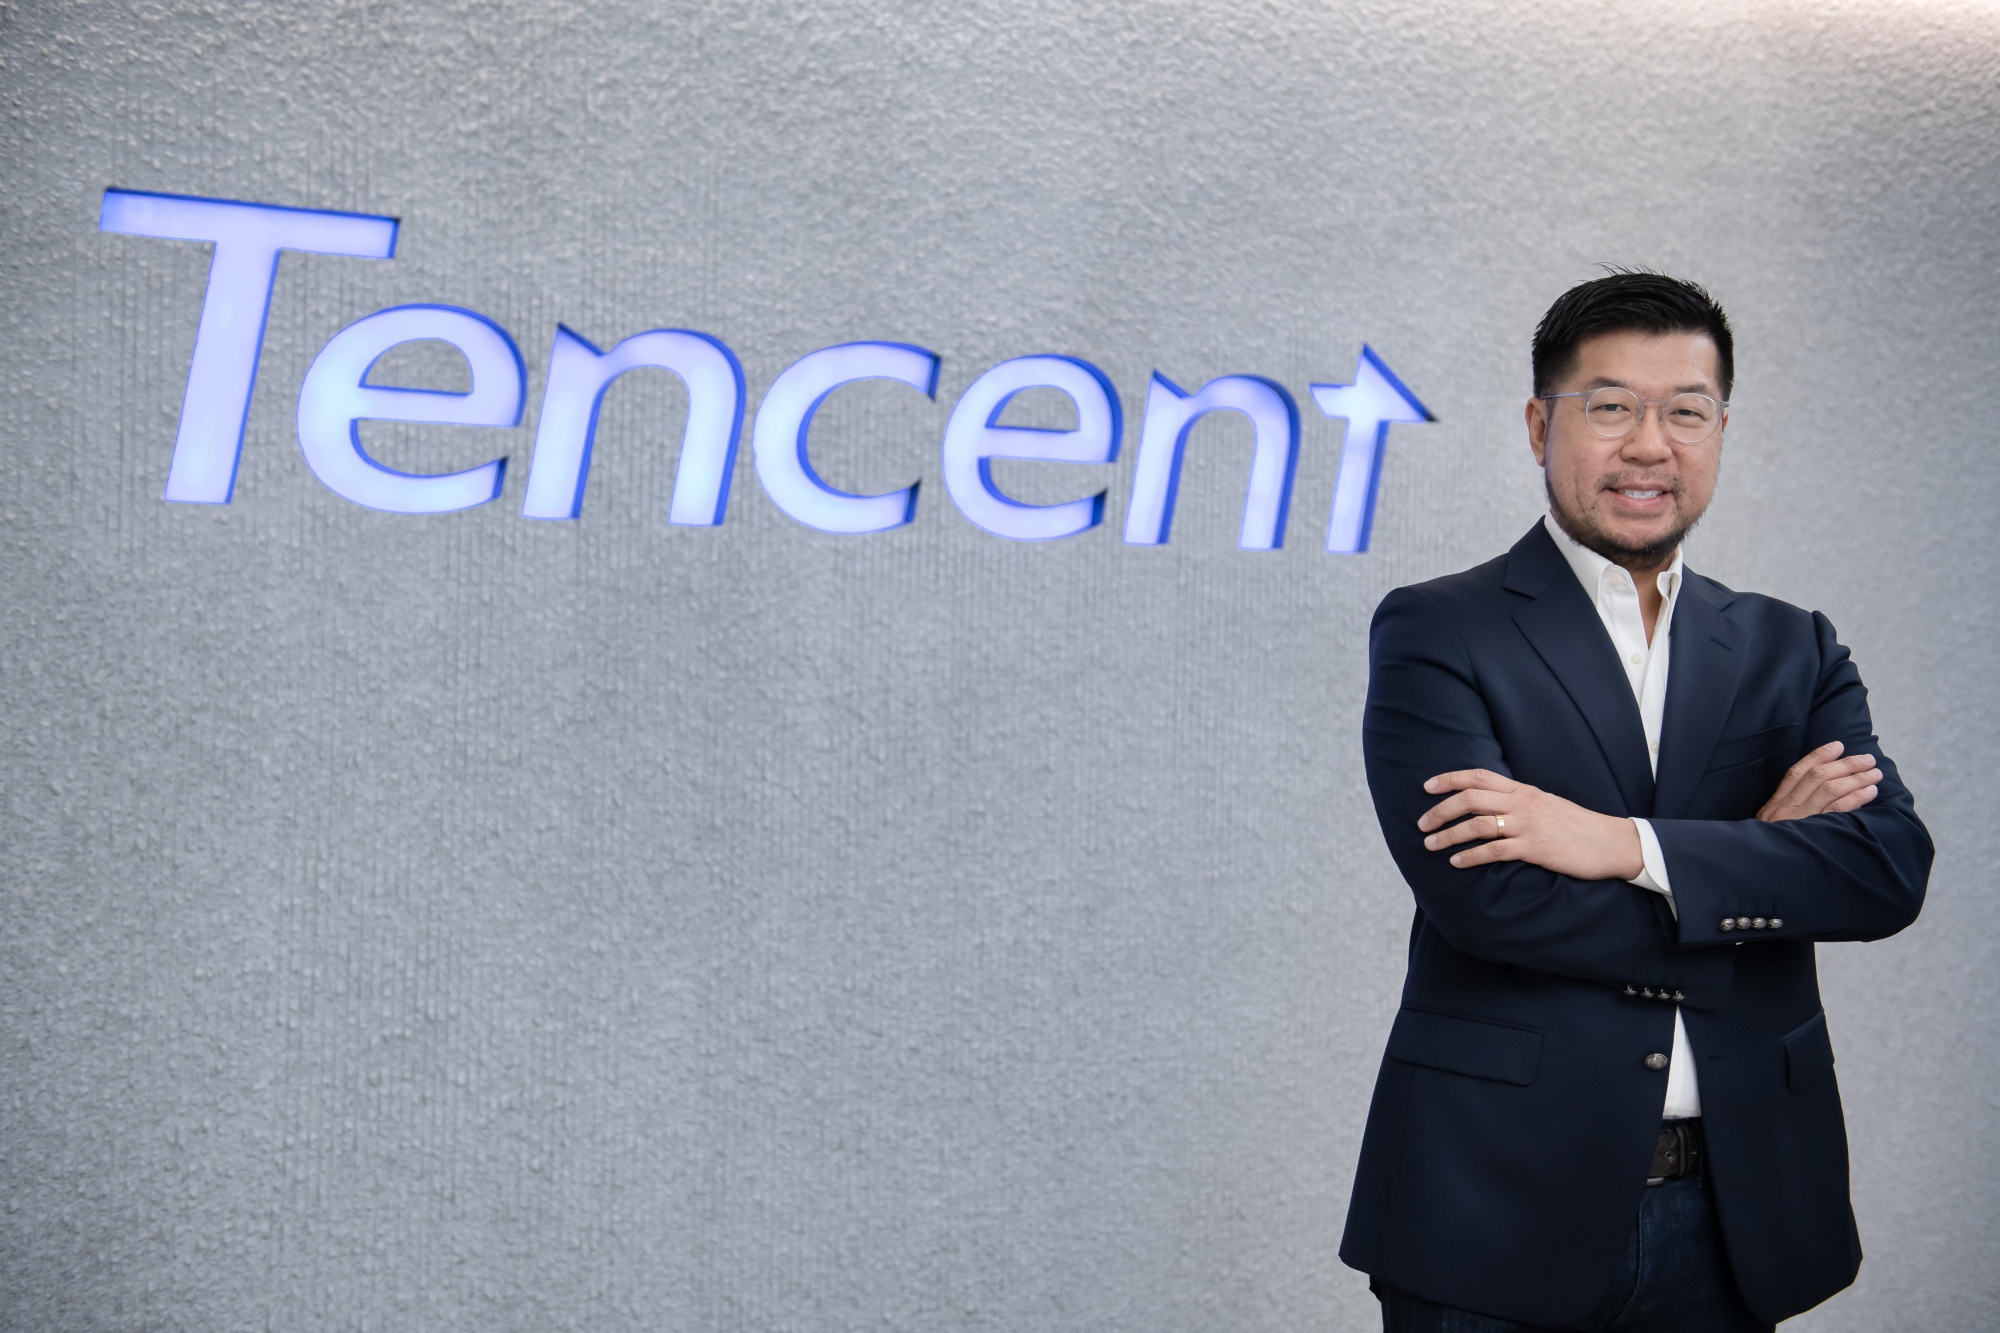 เทนเซ็นต์ คลาวด์ ส่งแพคเกจ Free Credit เจาะกลุ่มสตาร์ทอัพ-เอสเอ็มอีไทย มอบ Tencent Cloud Credit ฟรี 1,000 เหรียญสหรัฐฯ